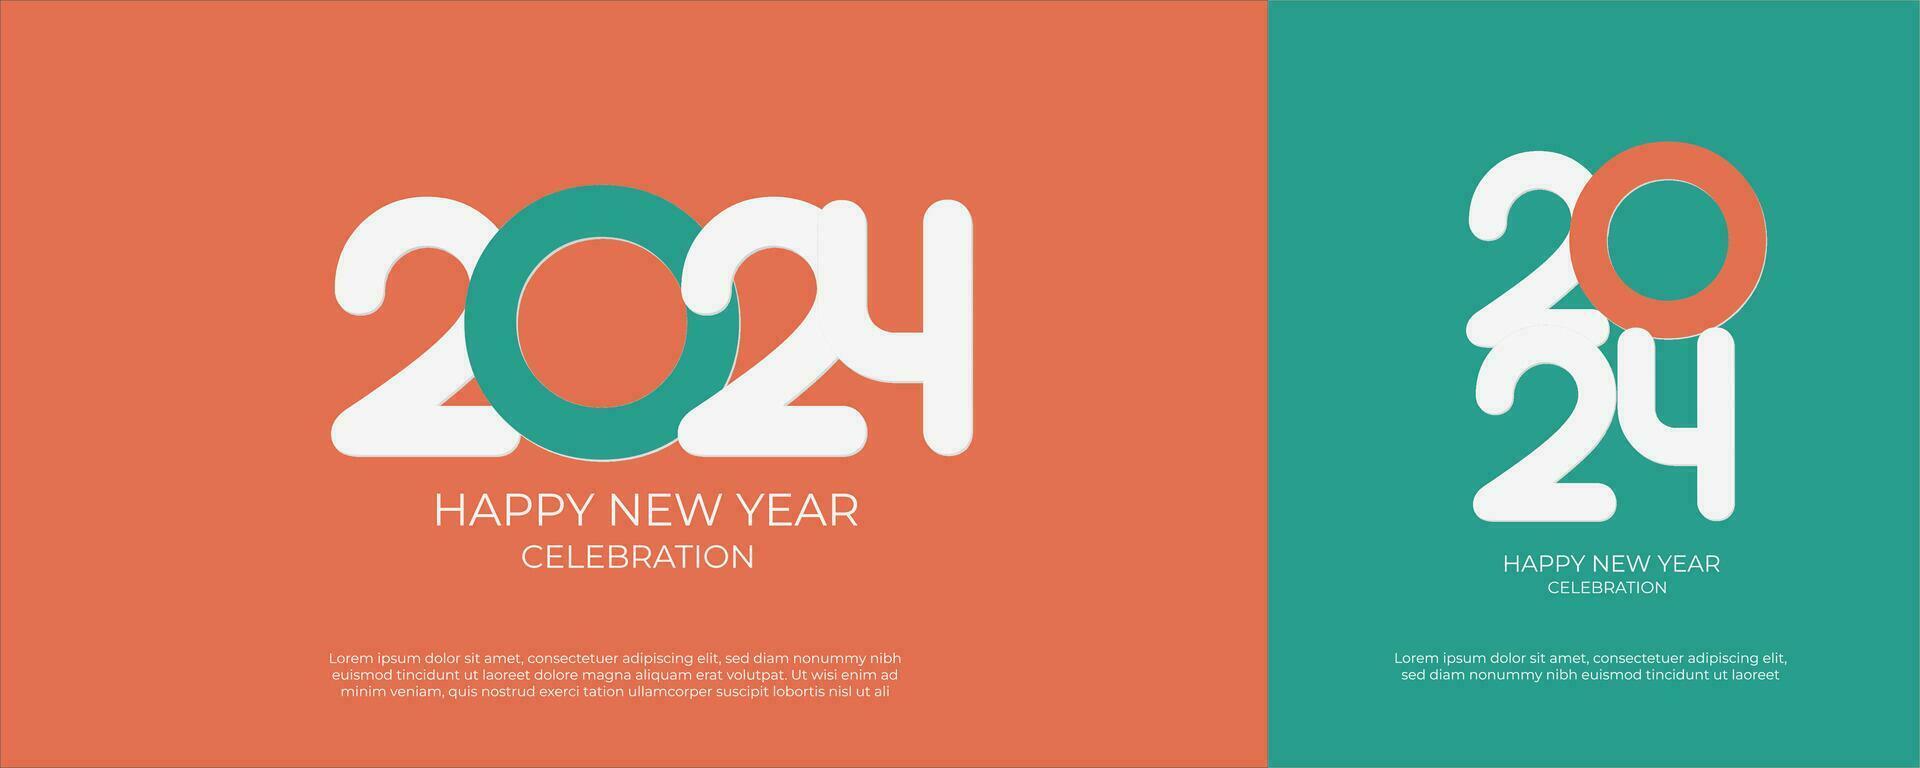 contento nuevo año 2024. festivo realista decoración. celebrar 2024 fiesta en un vistoso antecedentes vector